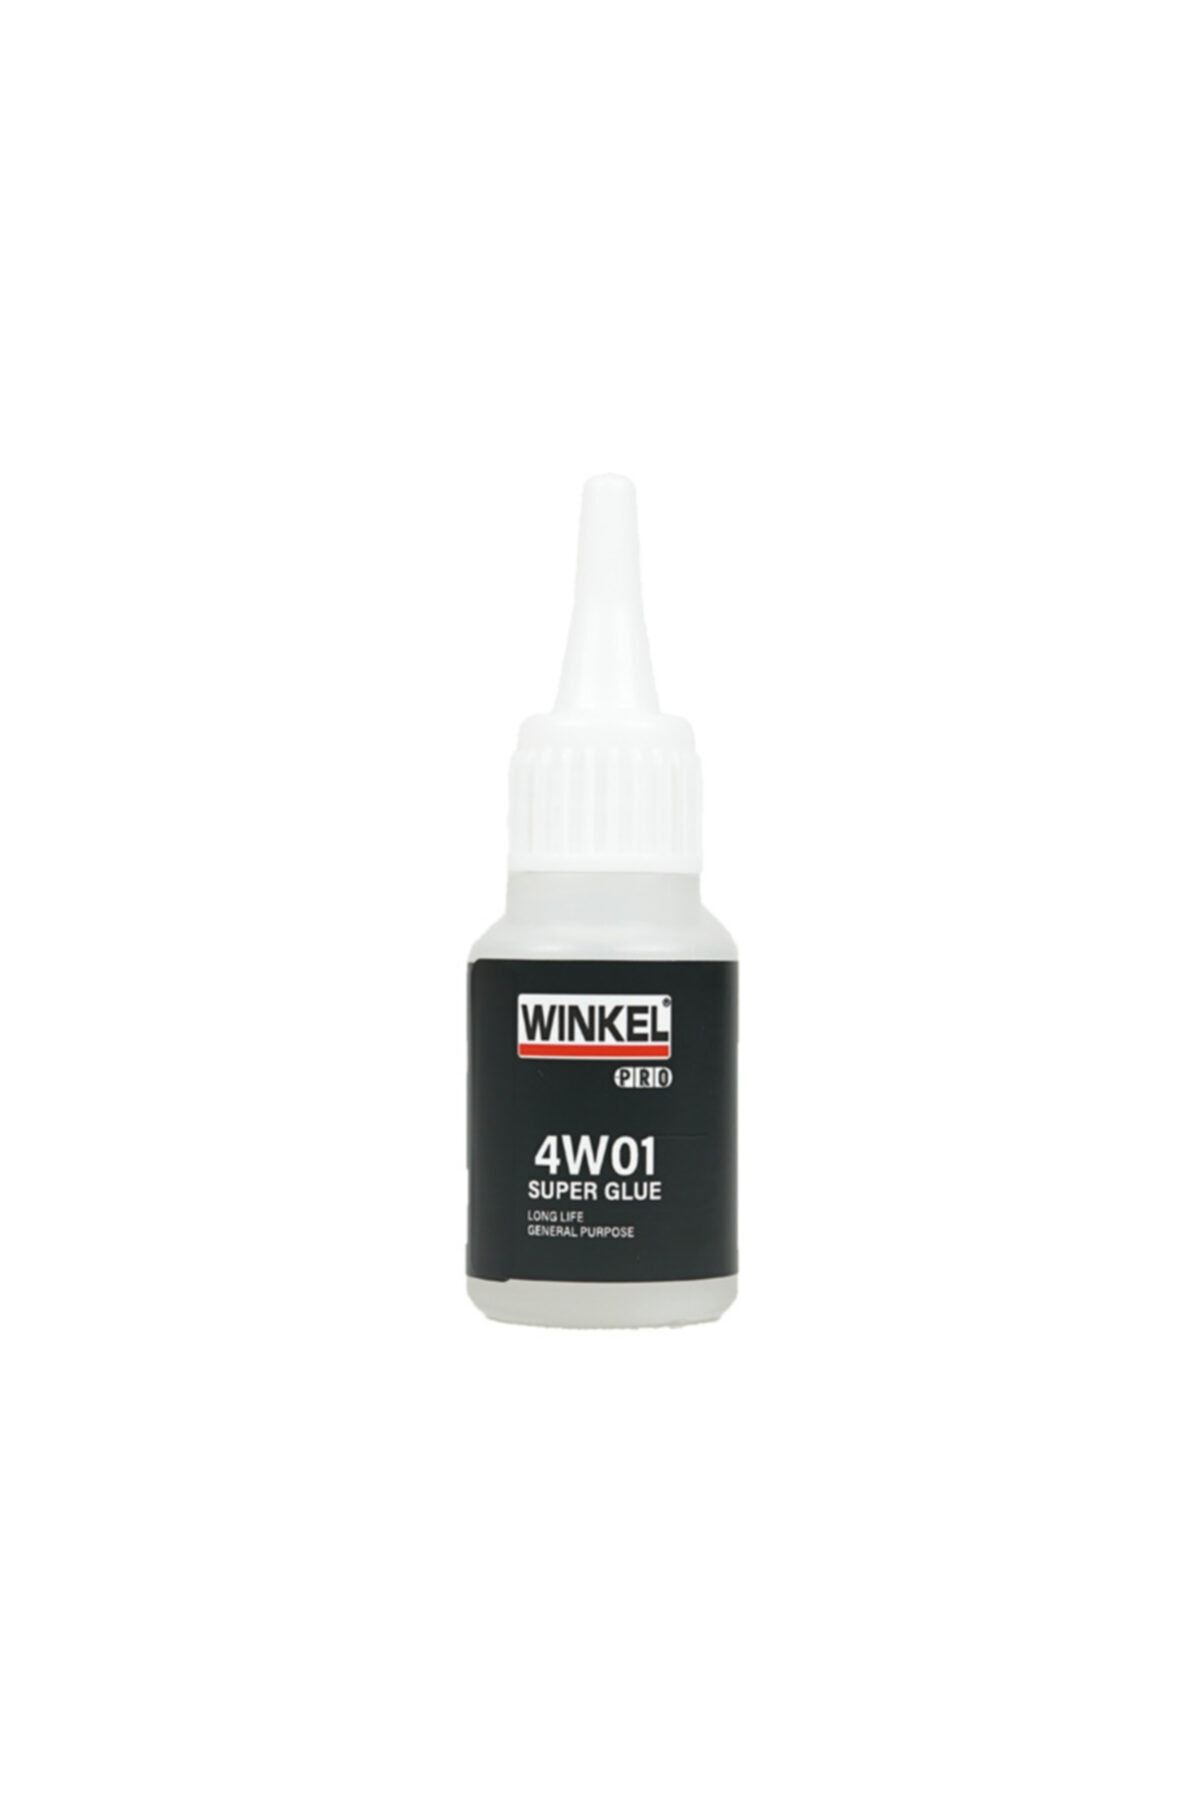 Winkel Wınkel Pro 4w01 Superglue Hızlı Yapıştırıcı 20 Gram (20105)